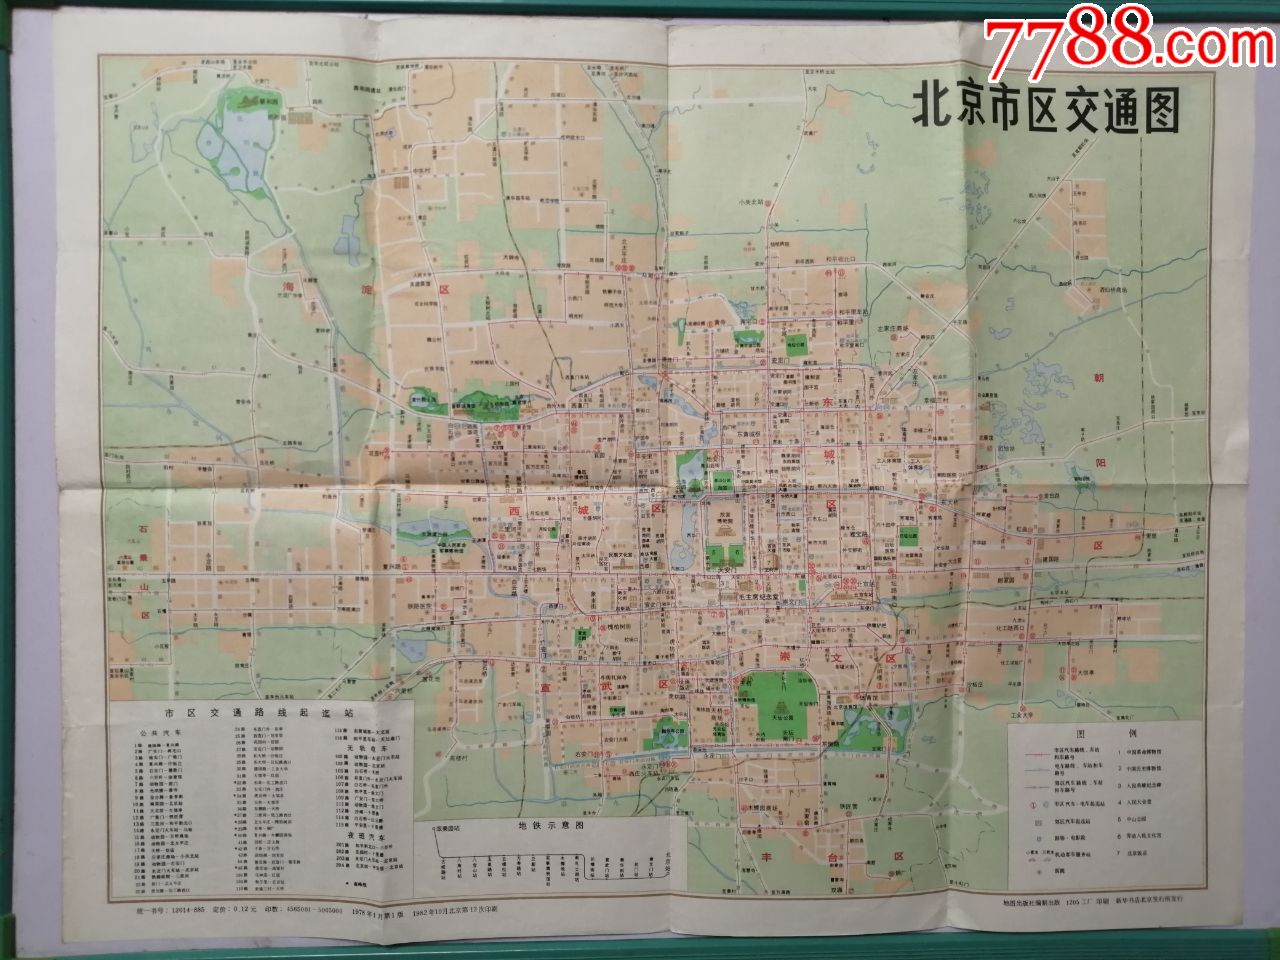 老地图:北京市区交通图-地图出版社1982年一版十三印